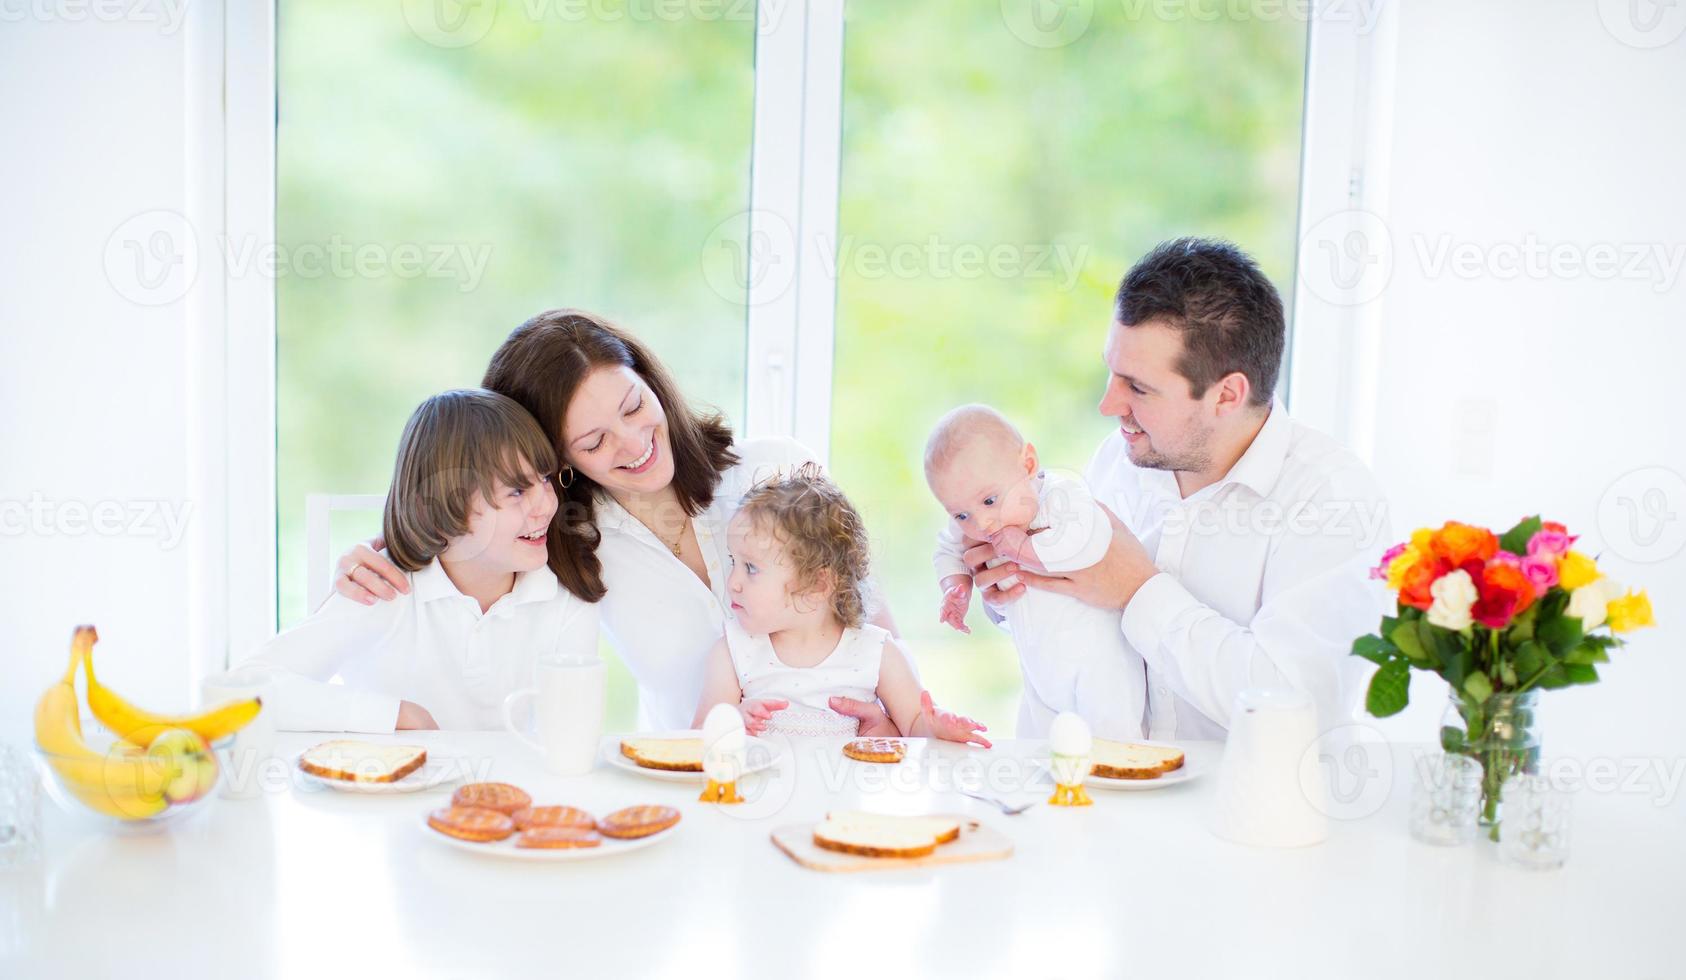 jong gezin met drie kinderen genieten van het ontbijt in de buurt van groot raam foto